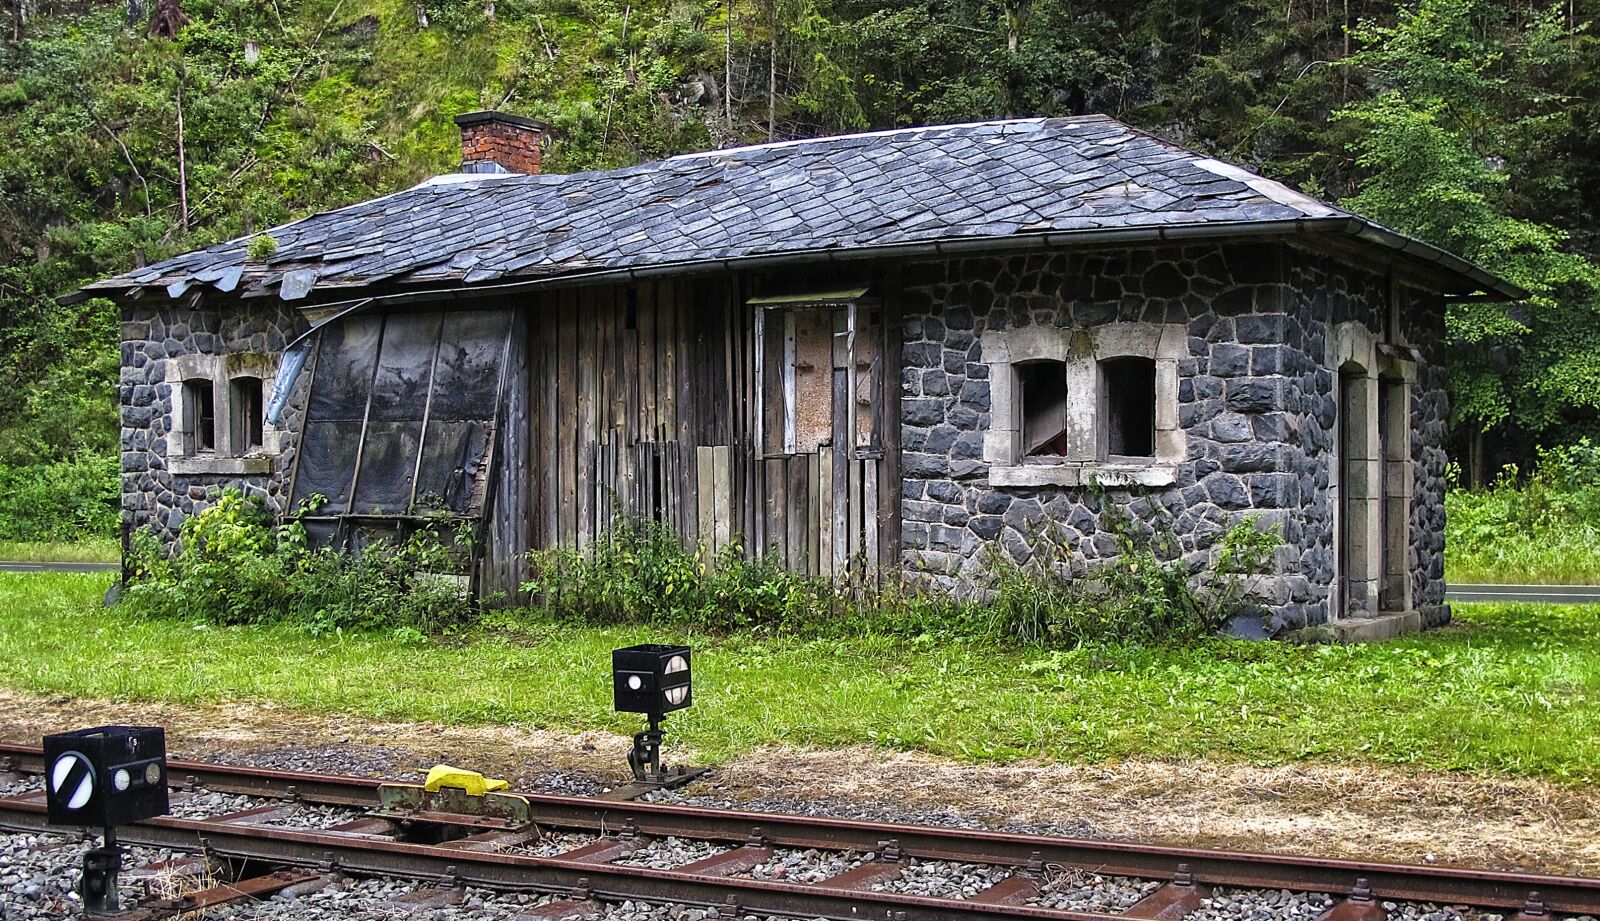 Canon PowerShot G12 sample photo. Railway station, abandoned, lapsed photography